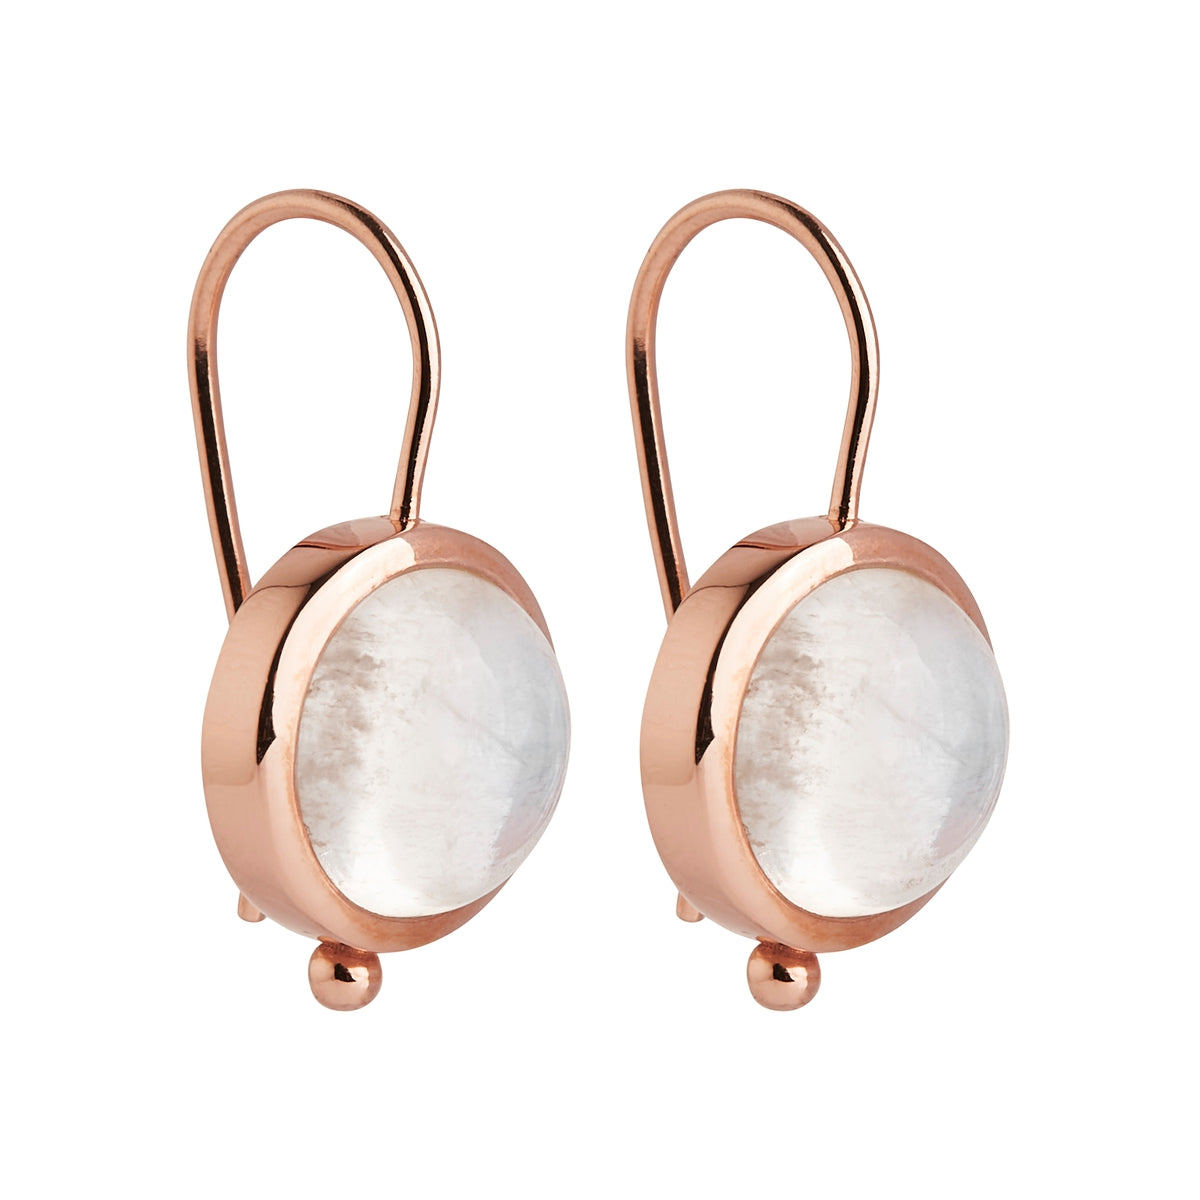 Moonstone Hook earrings